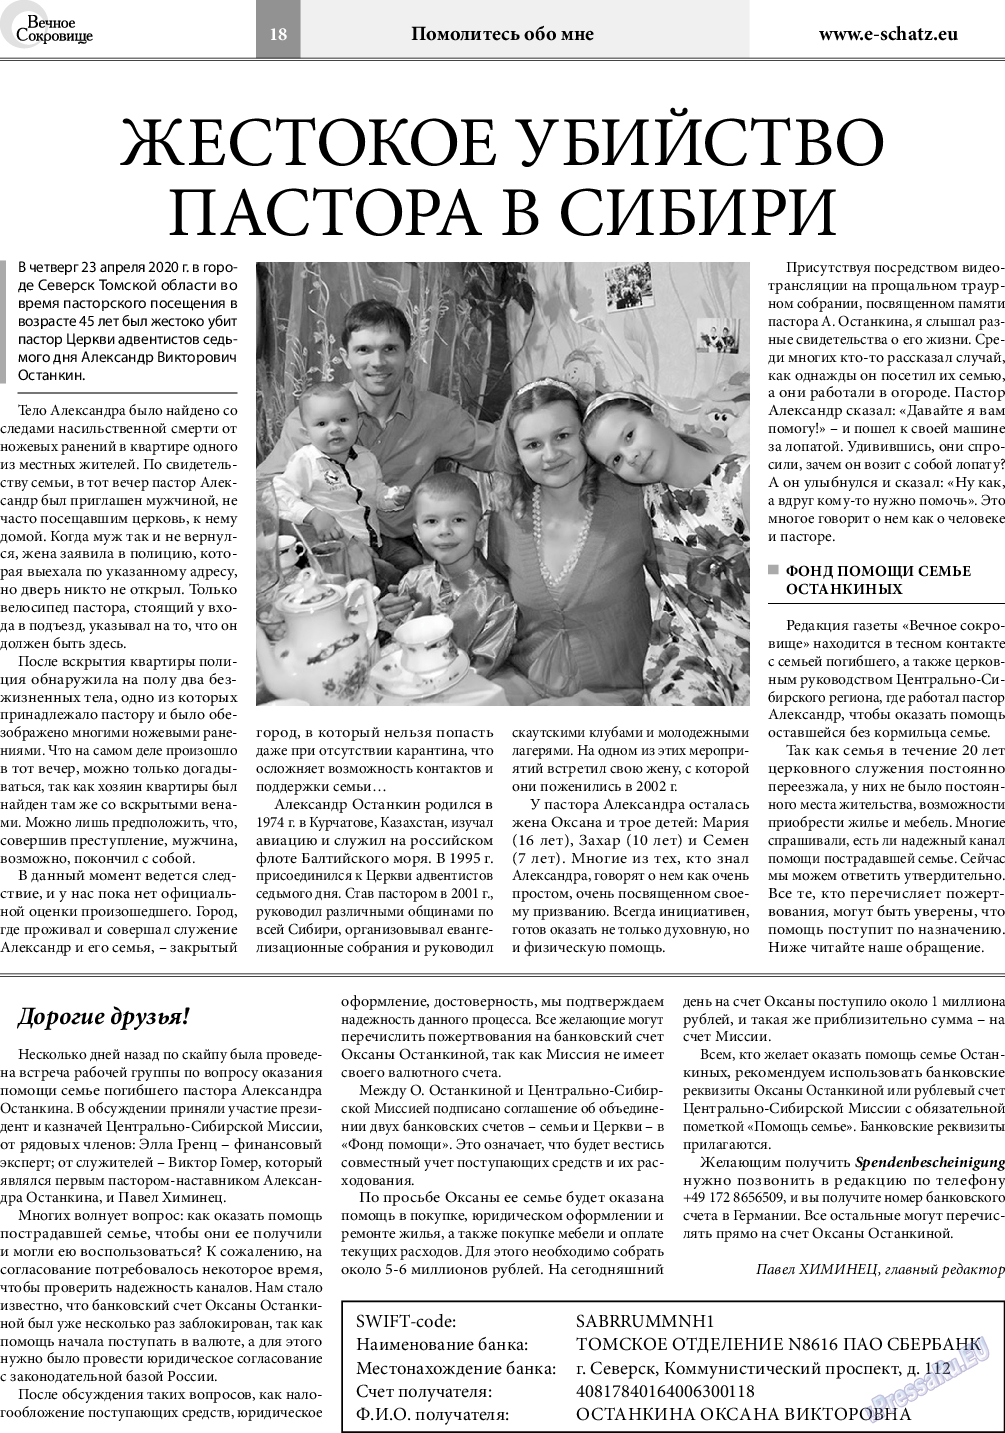 Вечное сокровище, газета. 2020 №3 стр.18